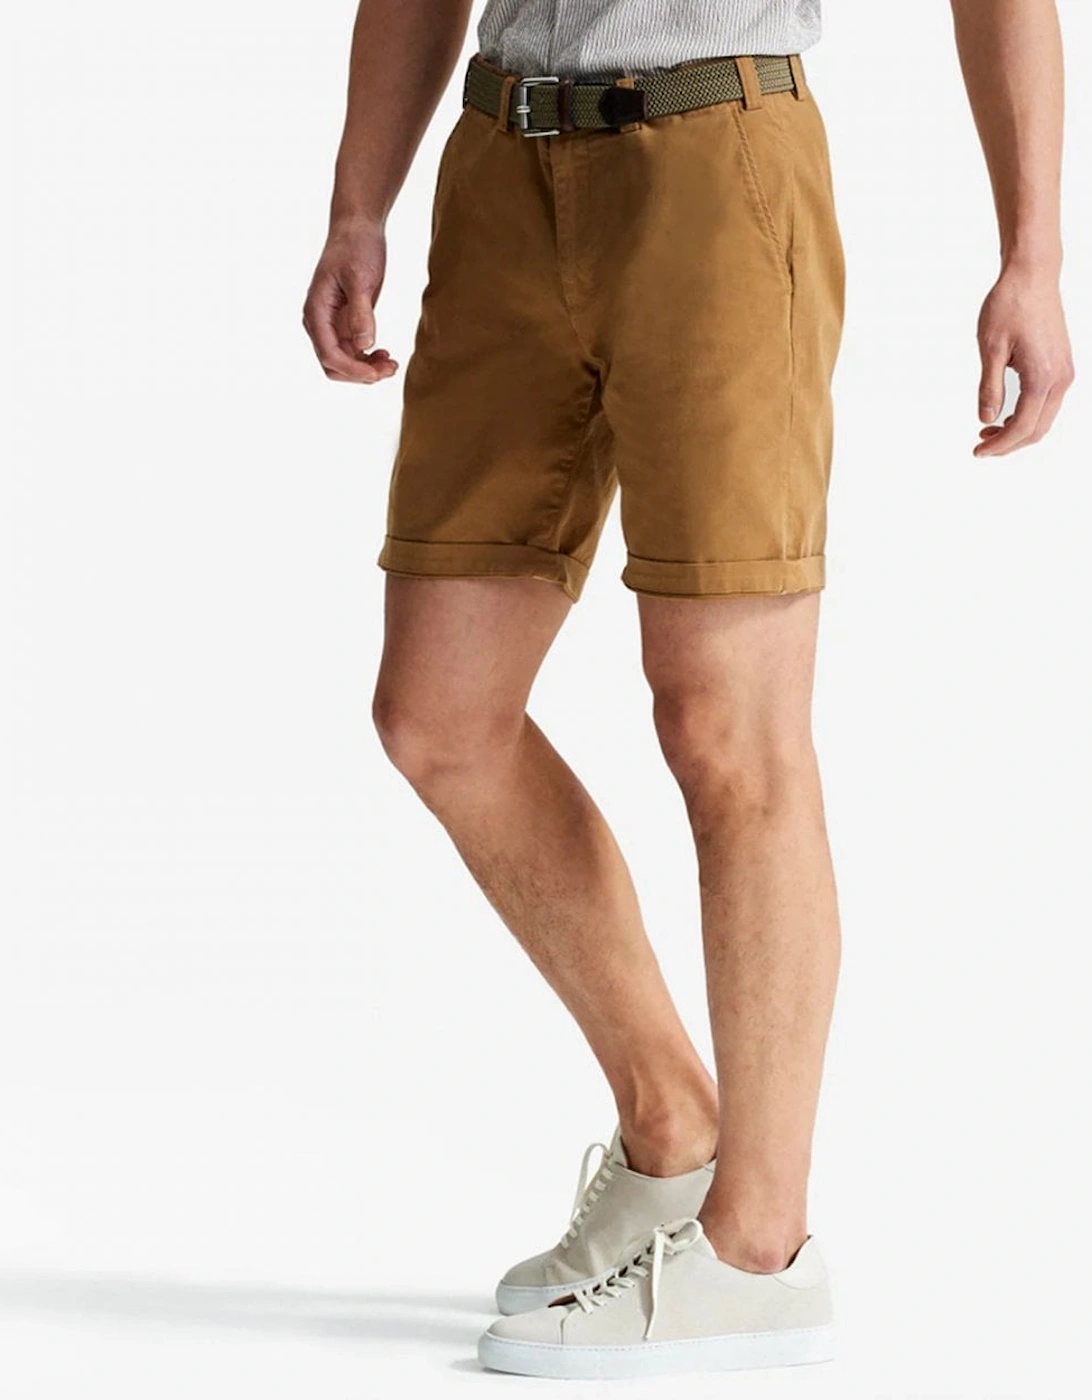 Frades Mens Italian Cotton Chino Shorts, 5 of 4